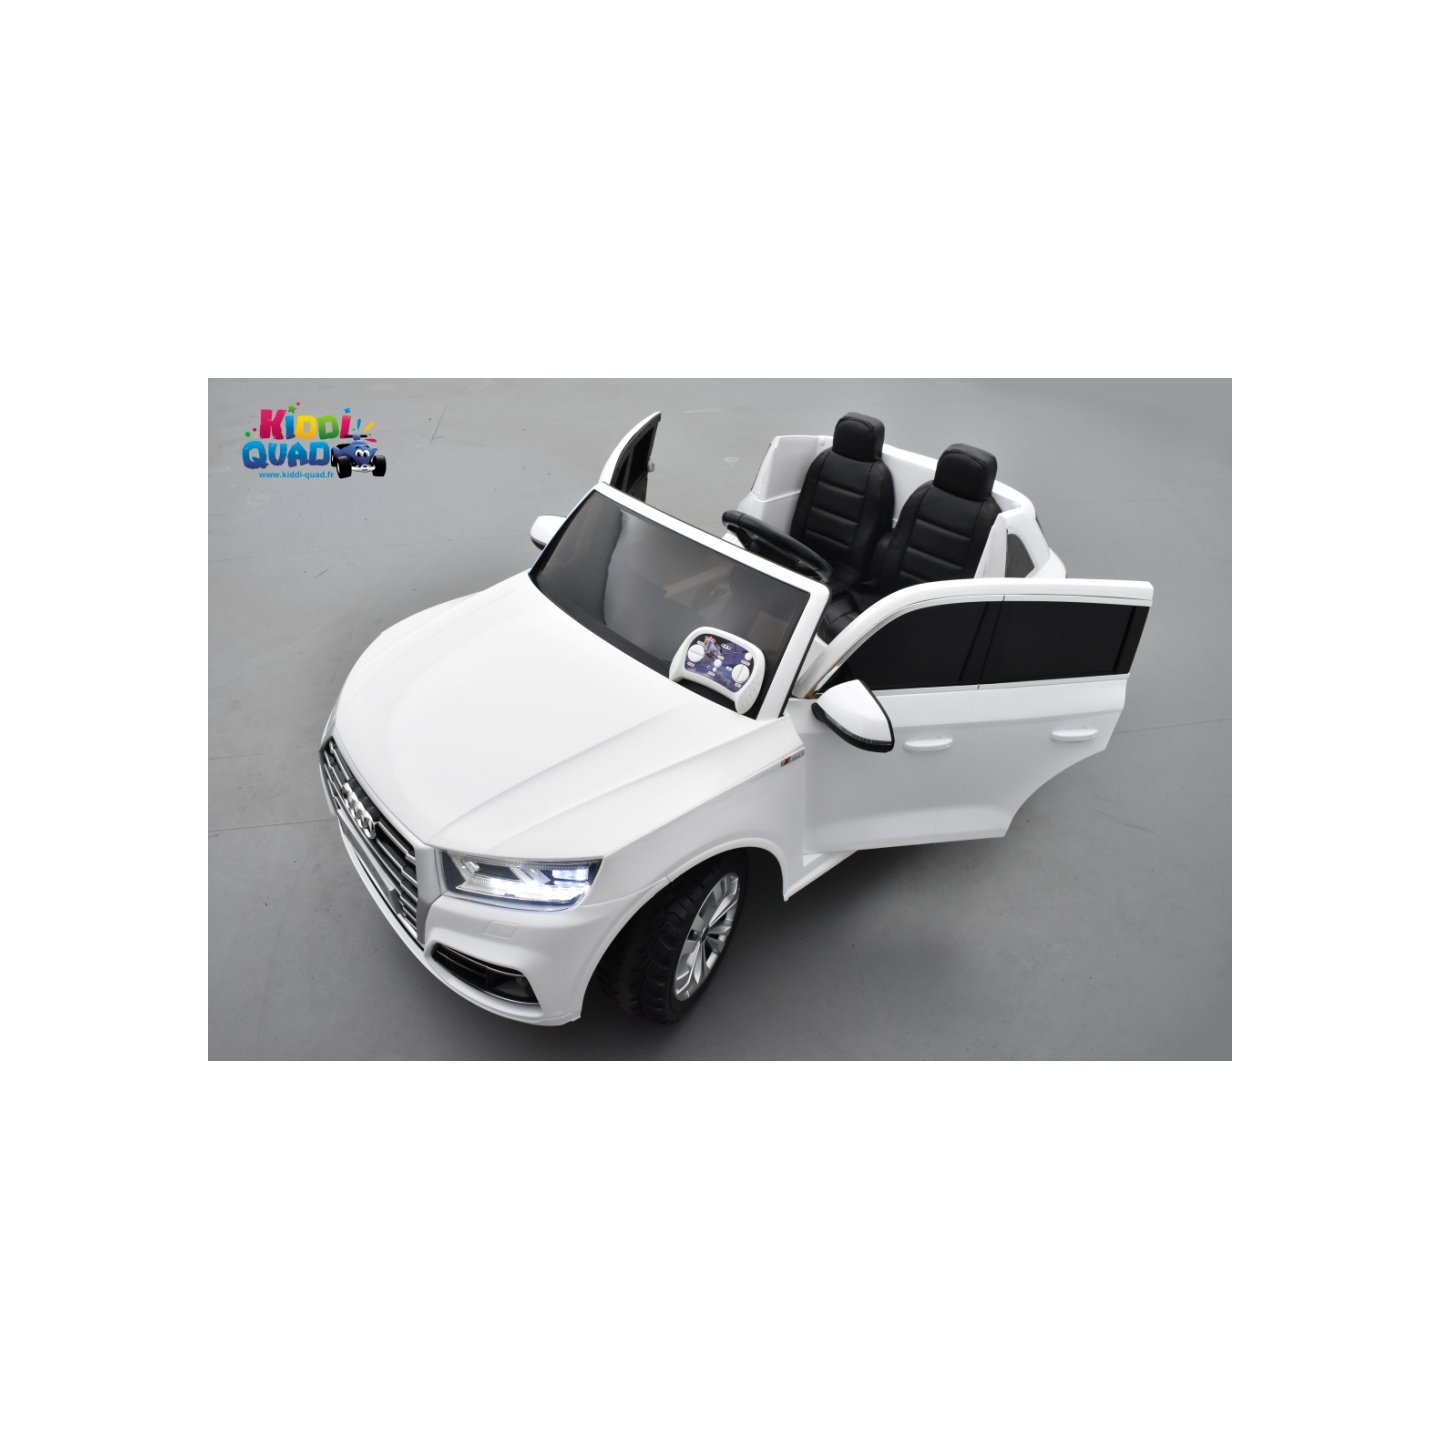 Audi Q5 TFSI 24 Volts 2 places blanc Ibis, voiture électrique